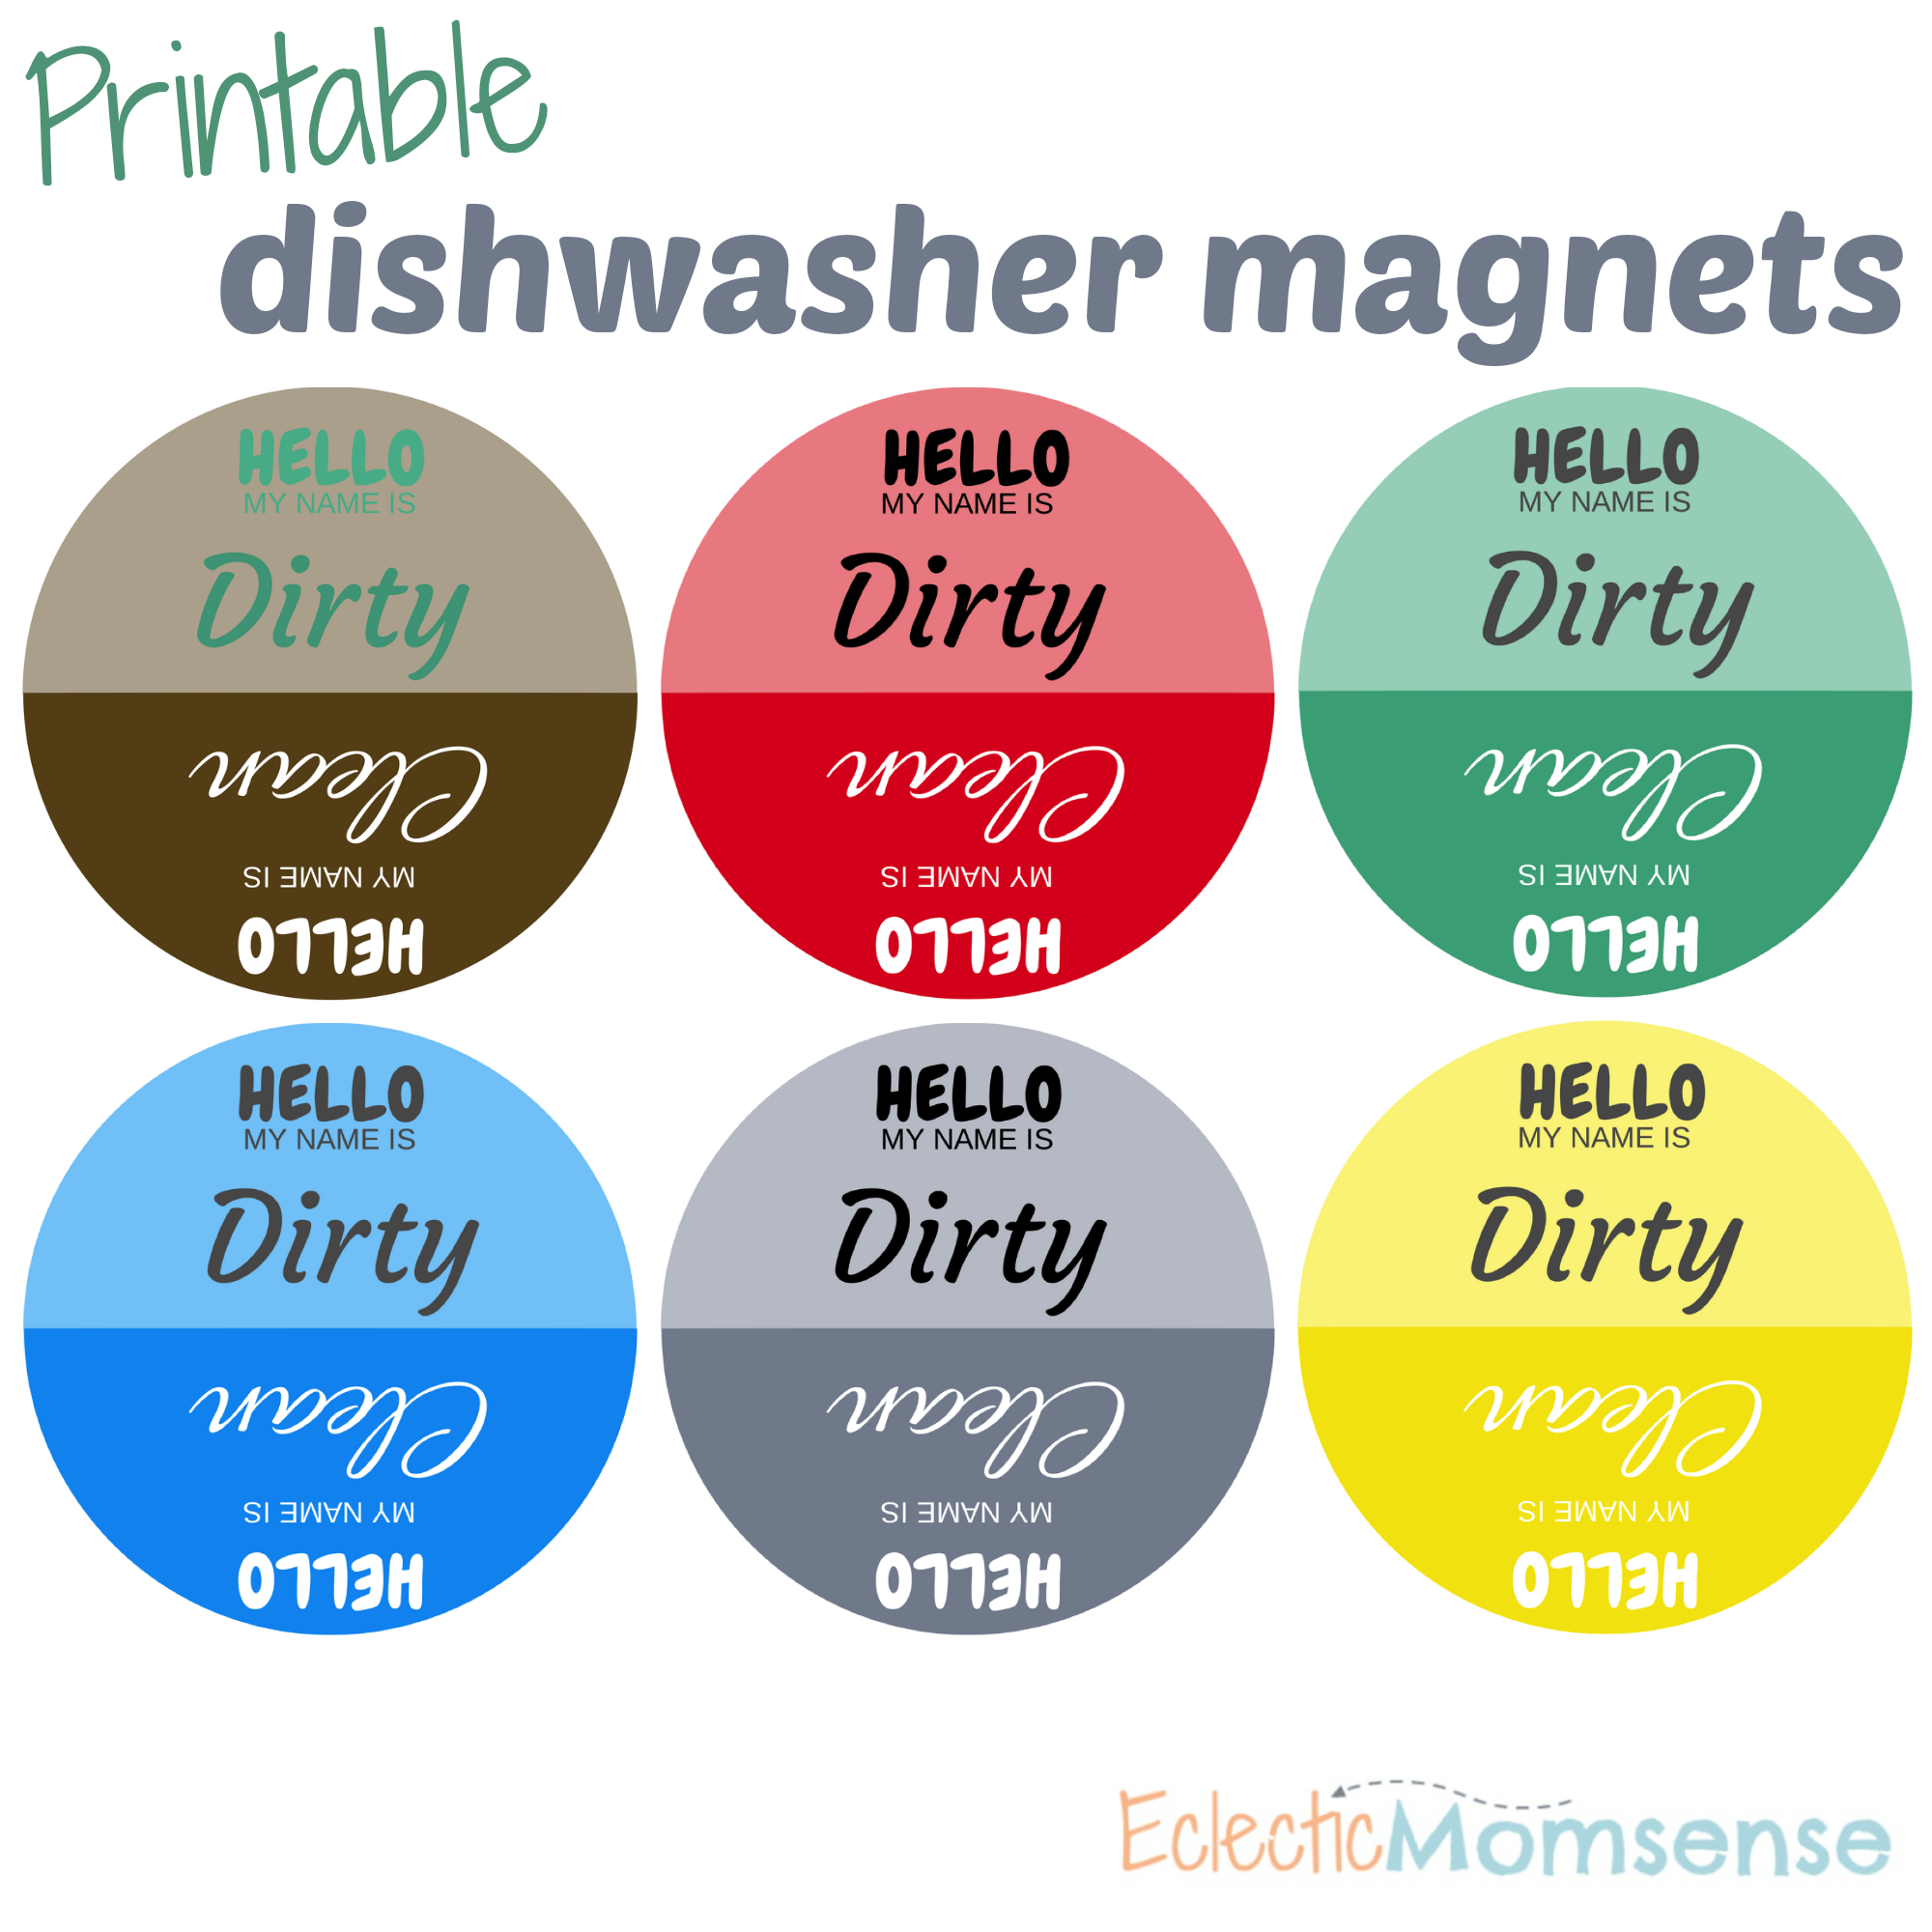 https://eclecticmomsense.com/wp-content/uploads/2014/08/Printable-Dishwasher-Magnets.png